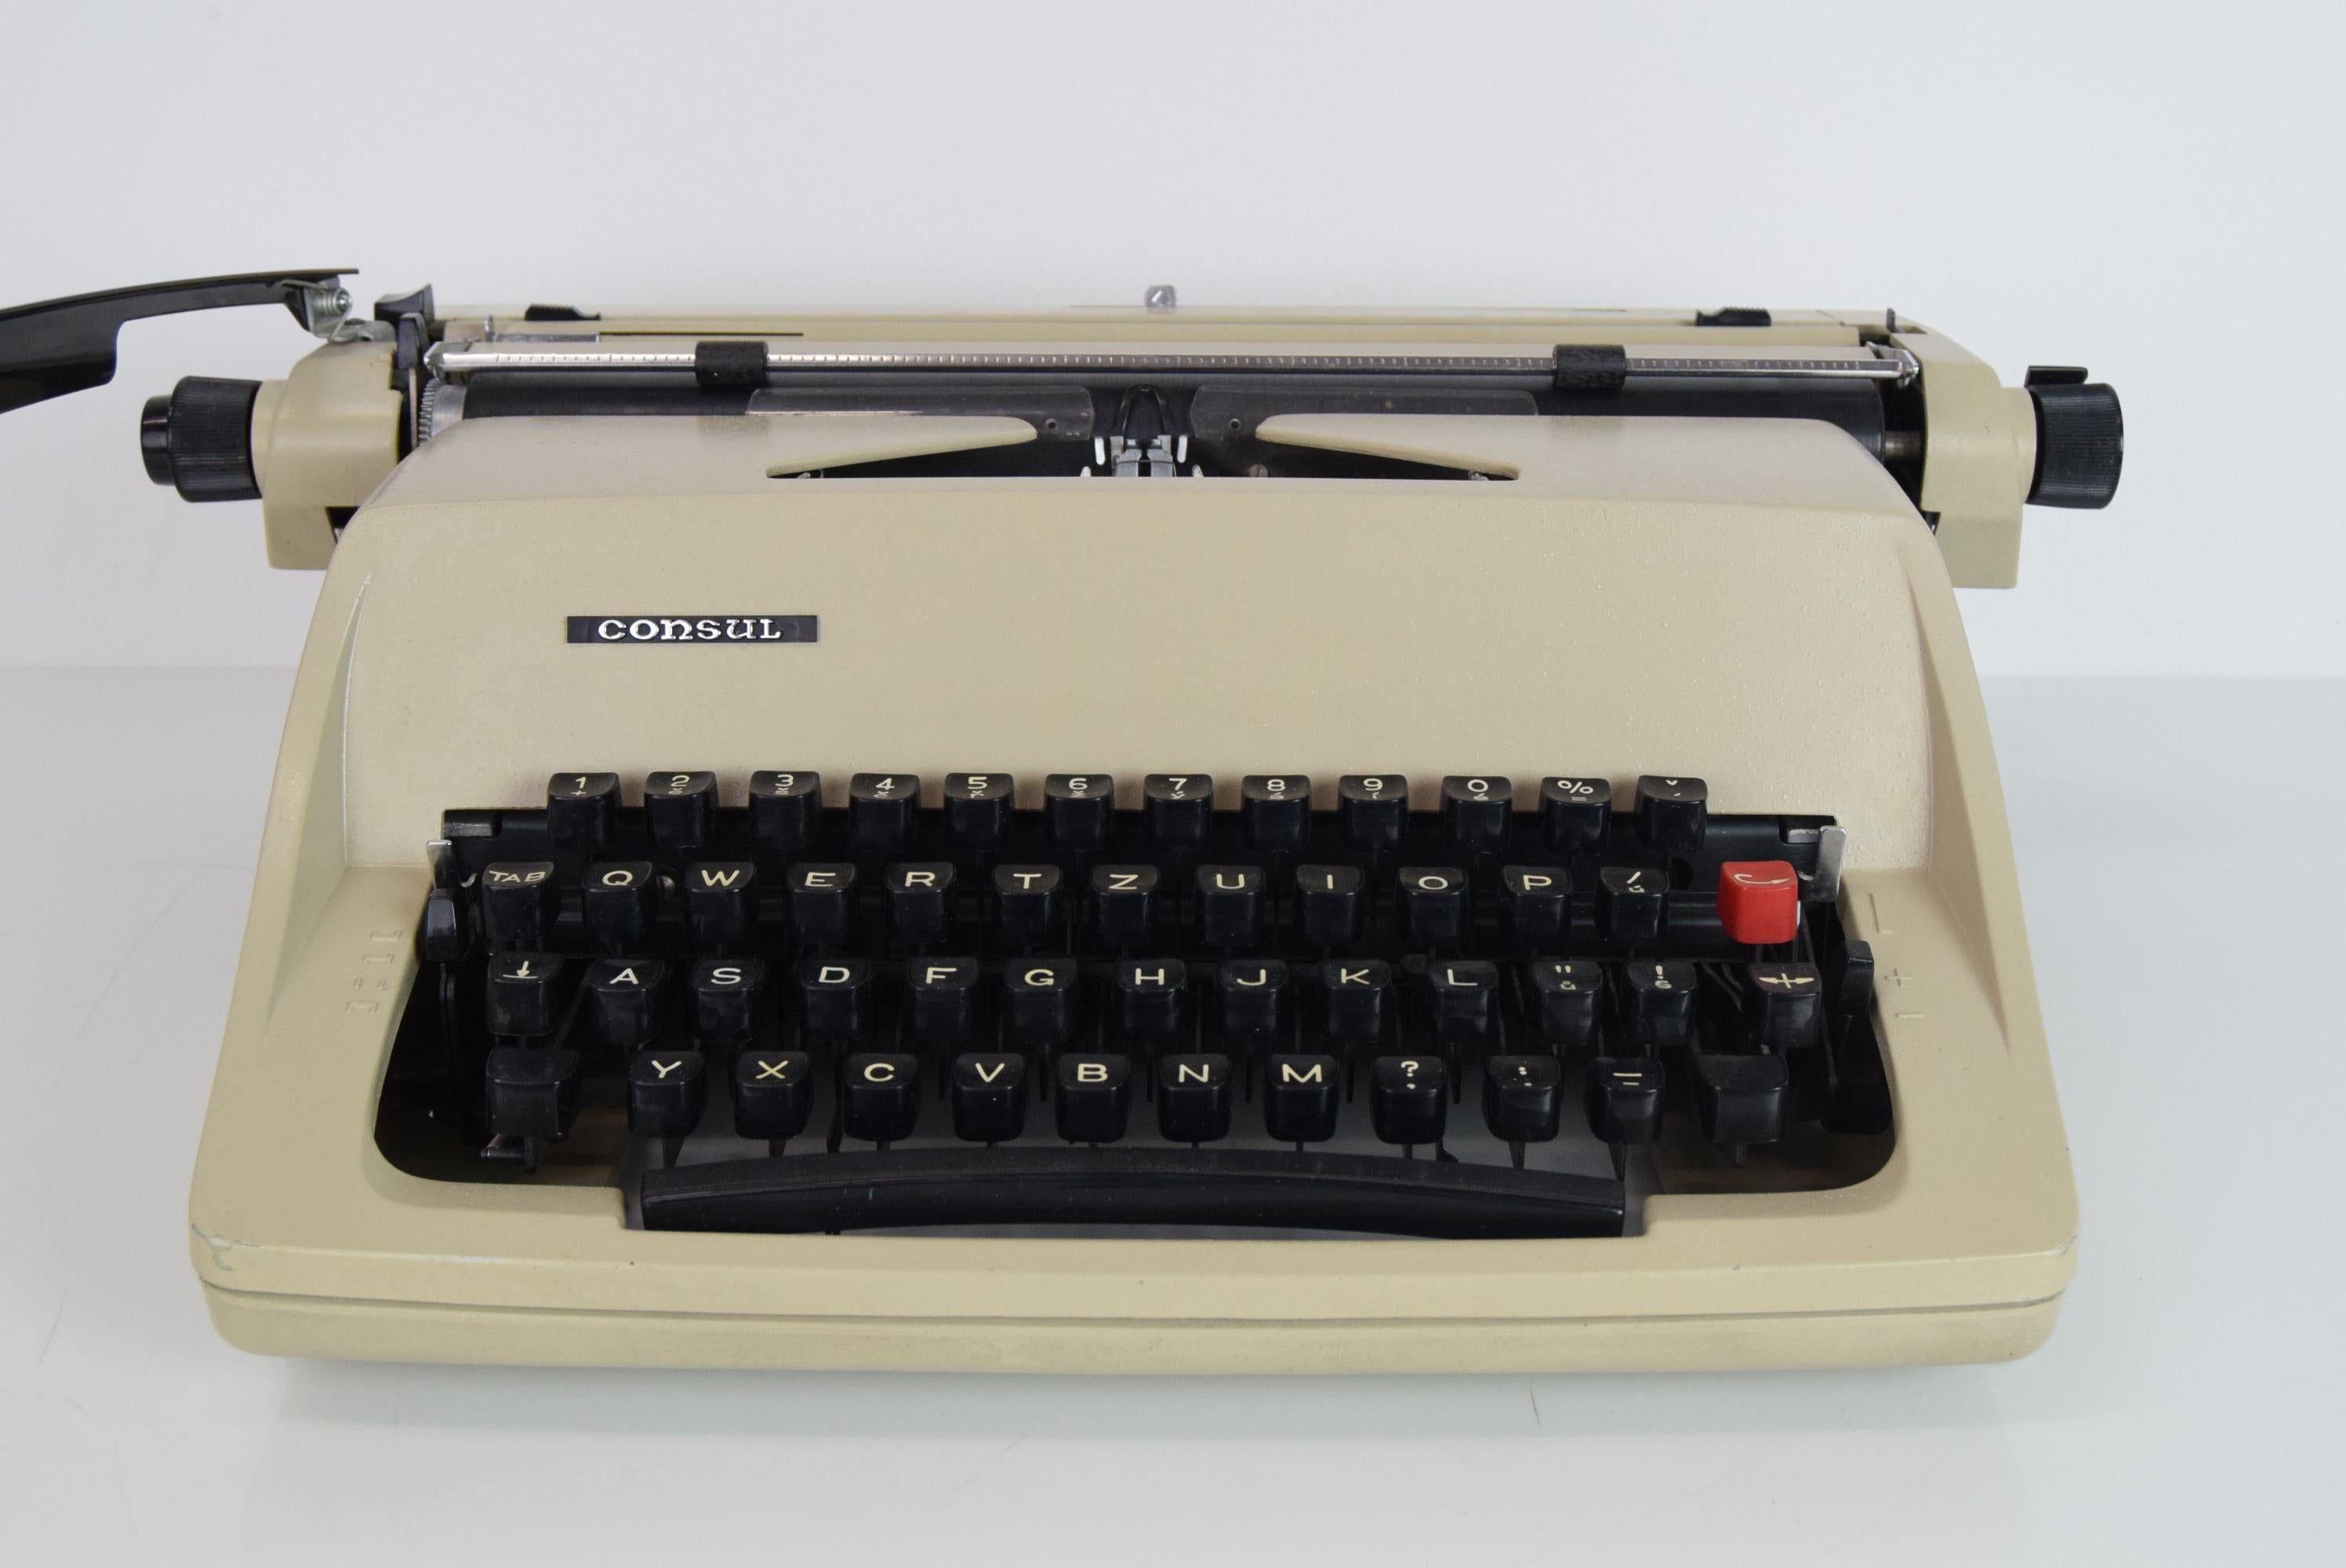 1980s typewriters